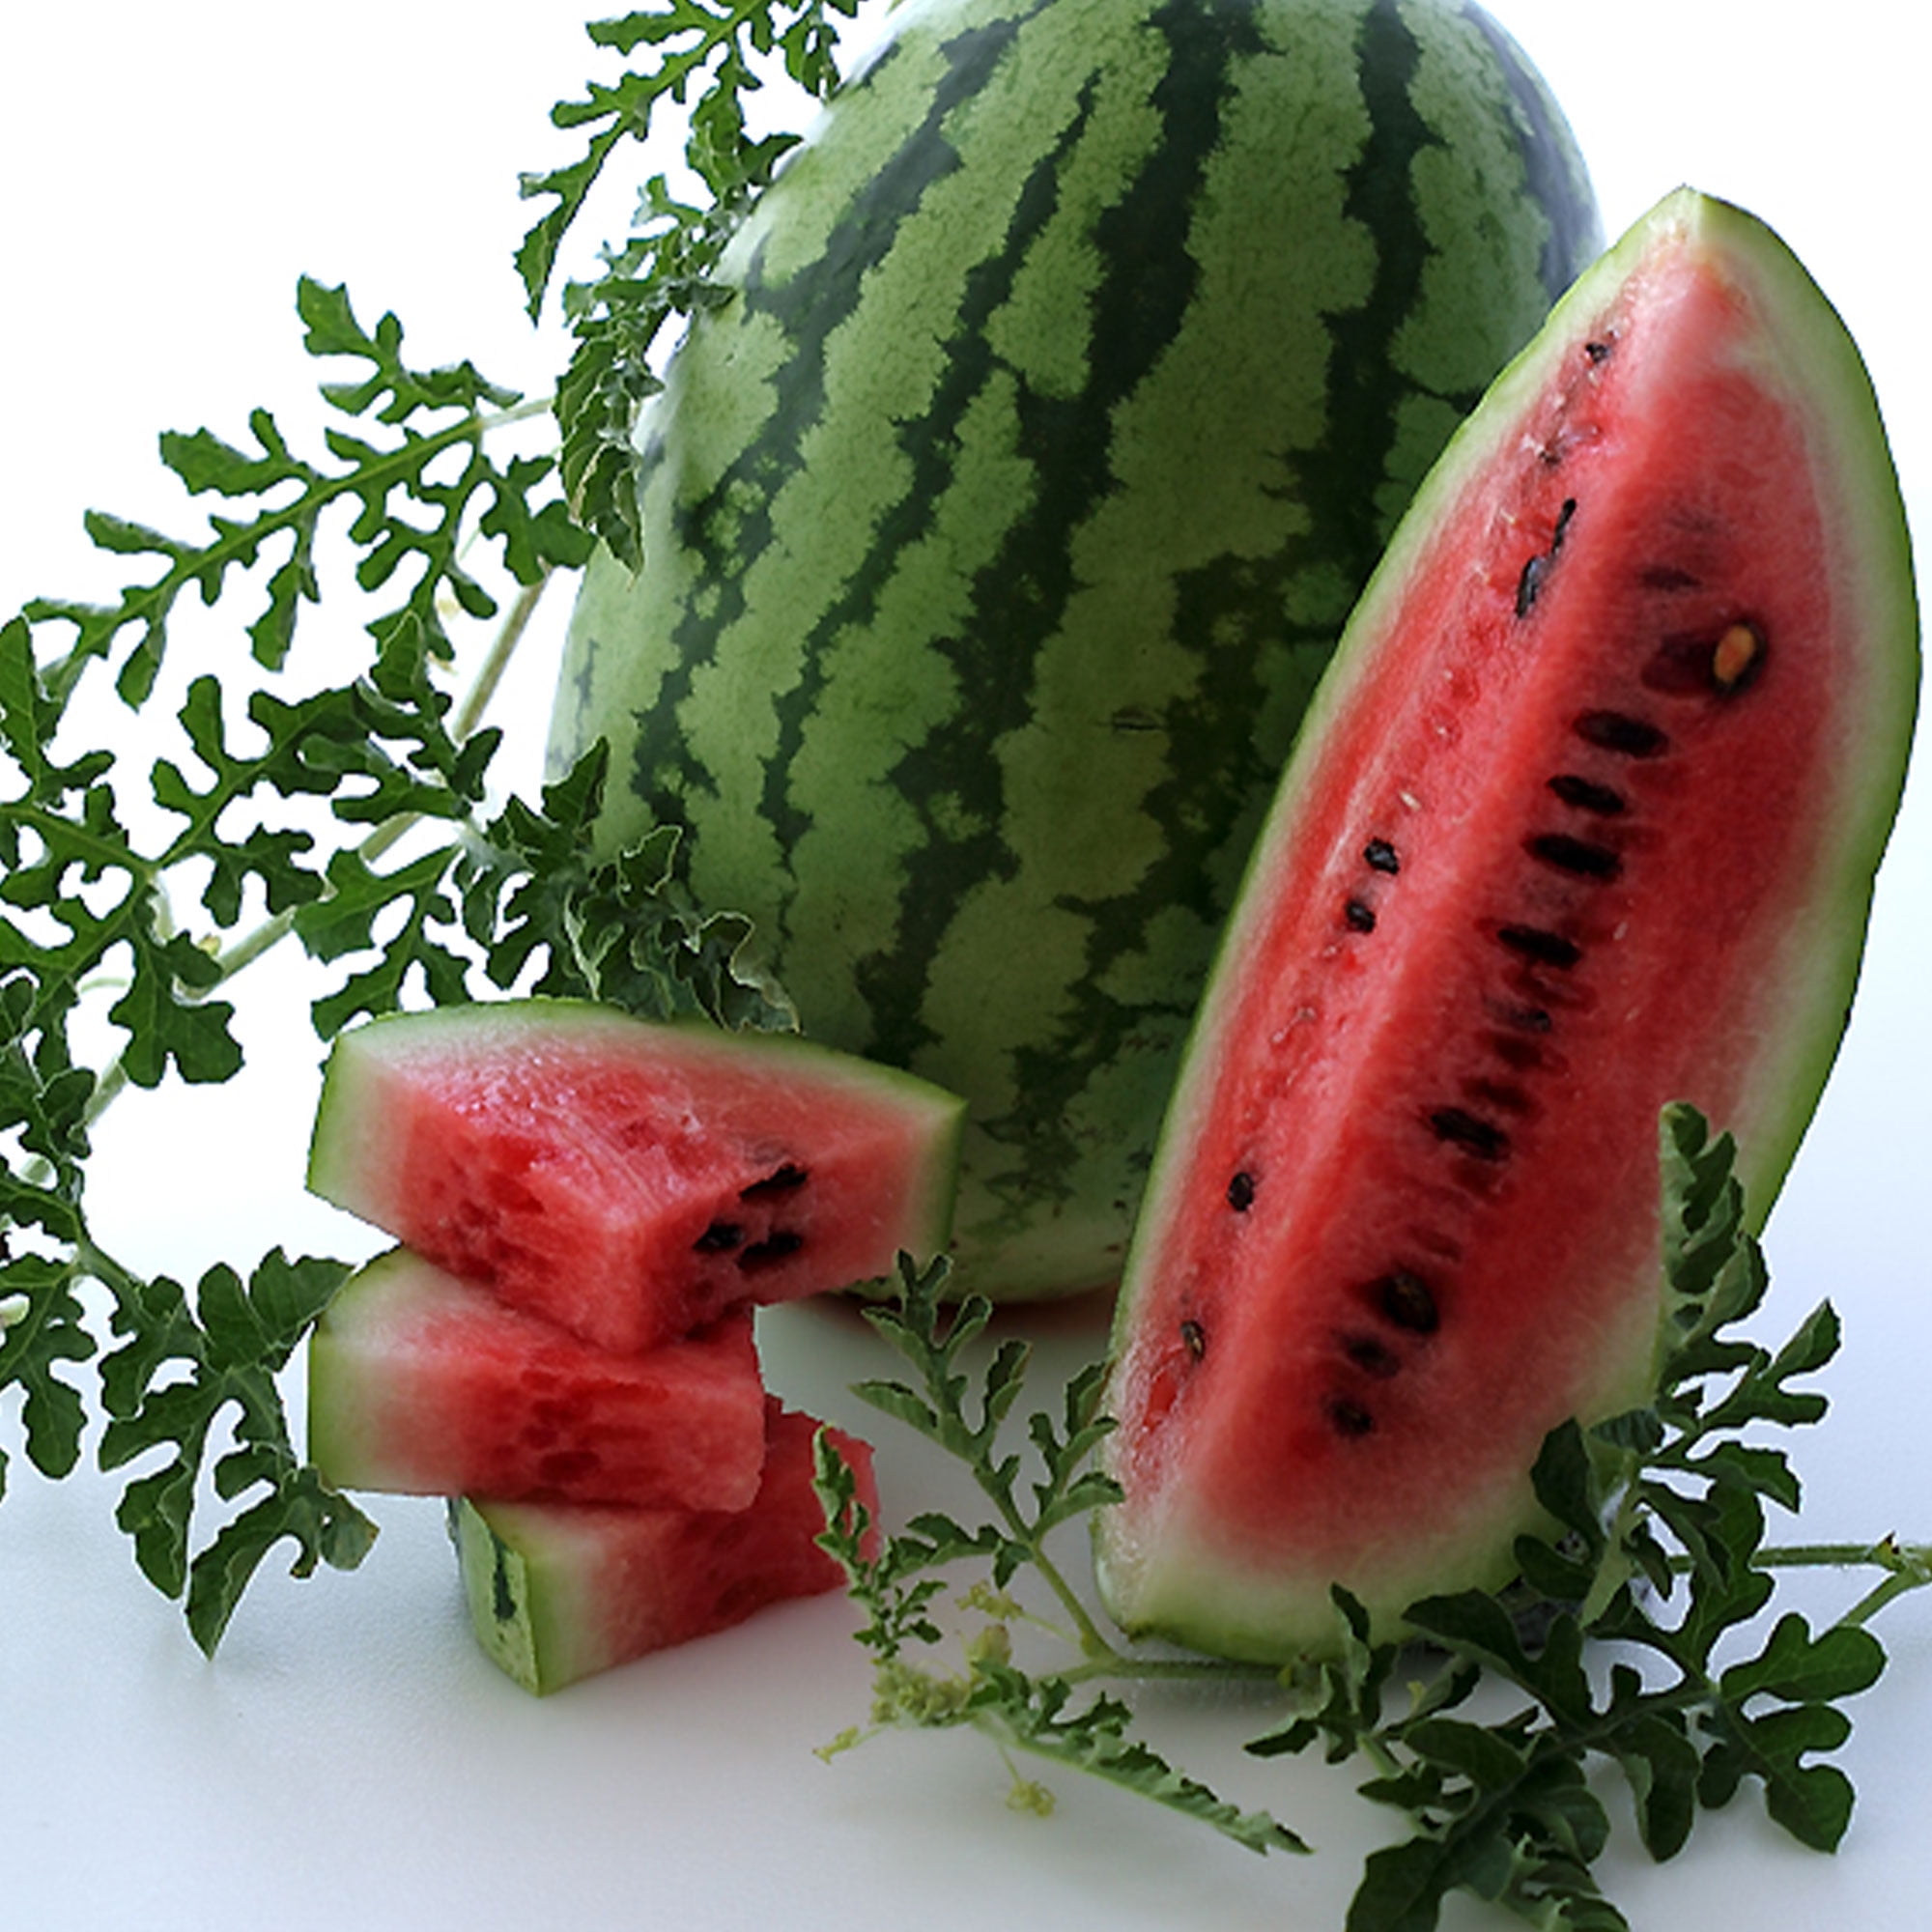 20 Pcs Seeds Mixed Colors Watermelon NON-GMO Rare Fruit Organic Home Garden New 